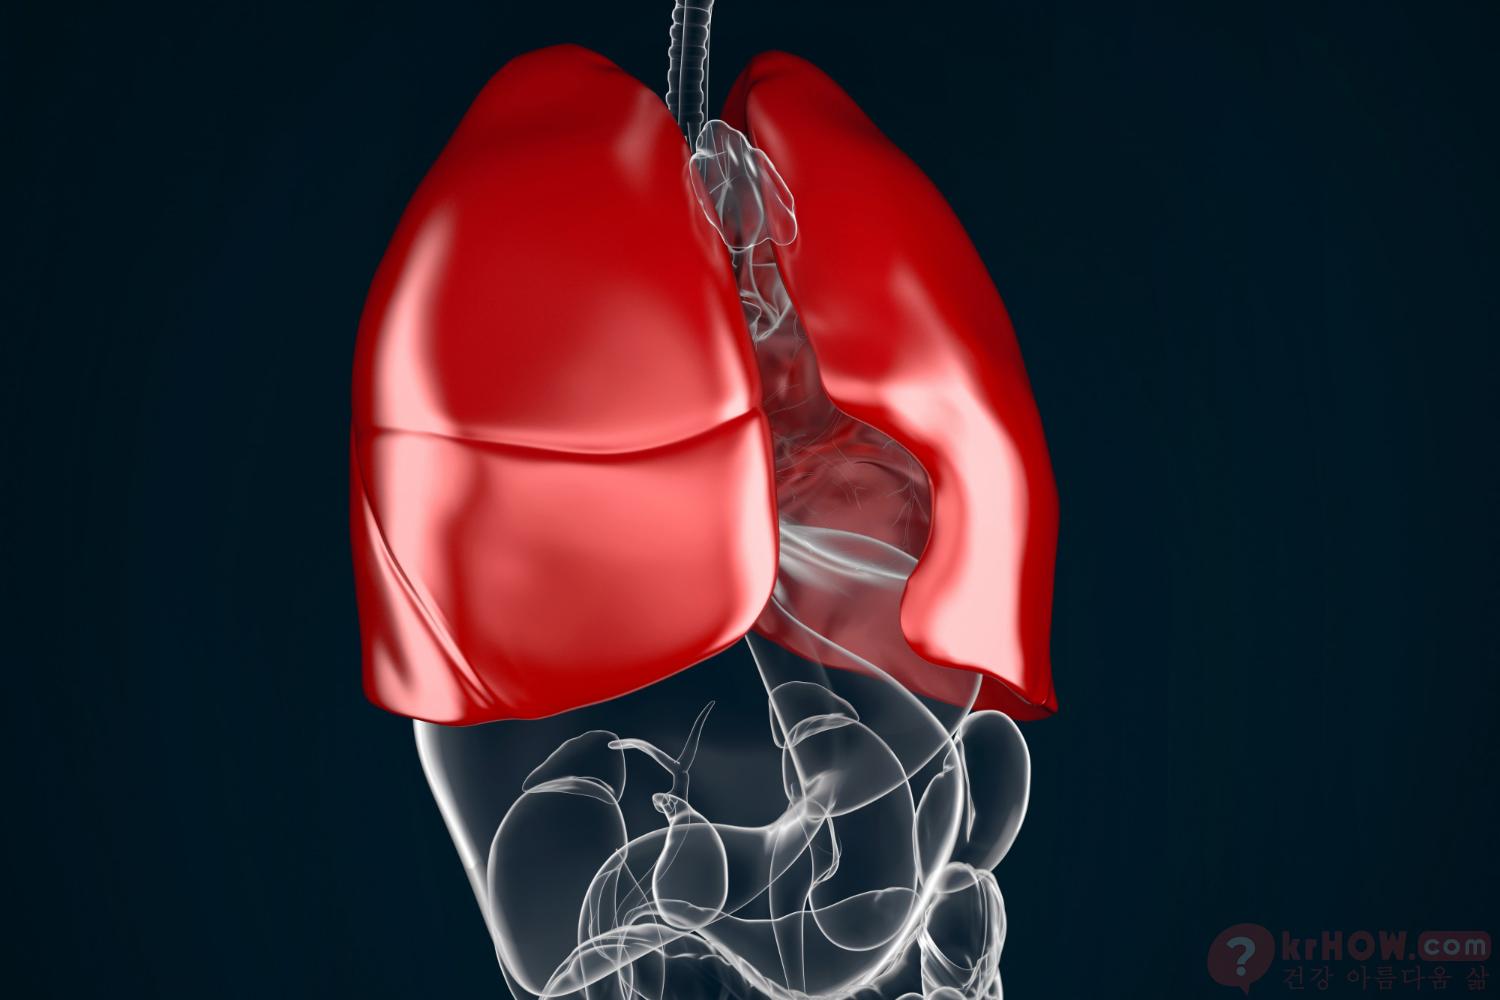 폐 낭종은 폐 조직 내에 형성되는 공기 또는 액체로 채워진 비정상적인 주머니입니다.